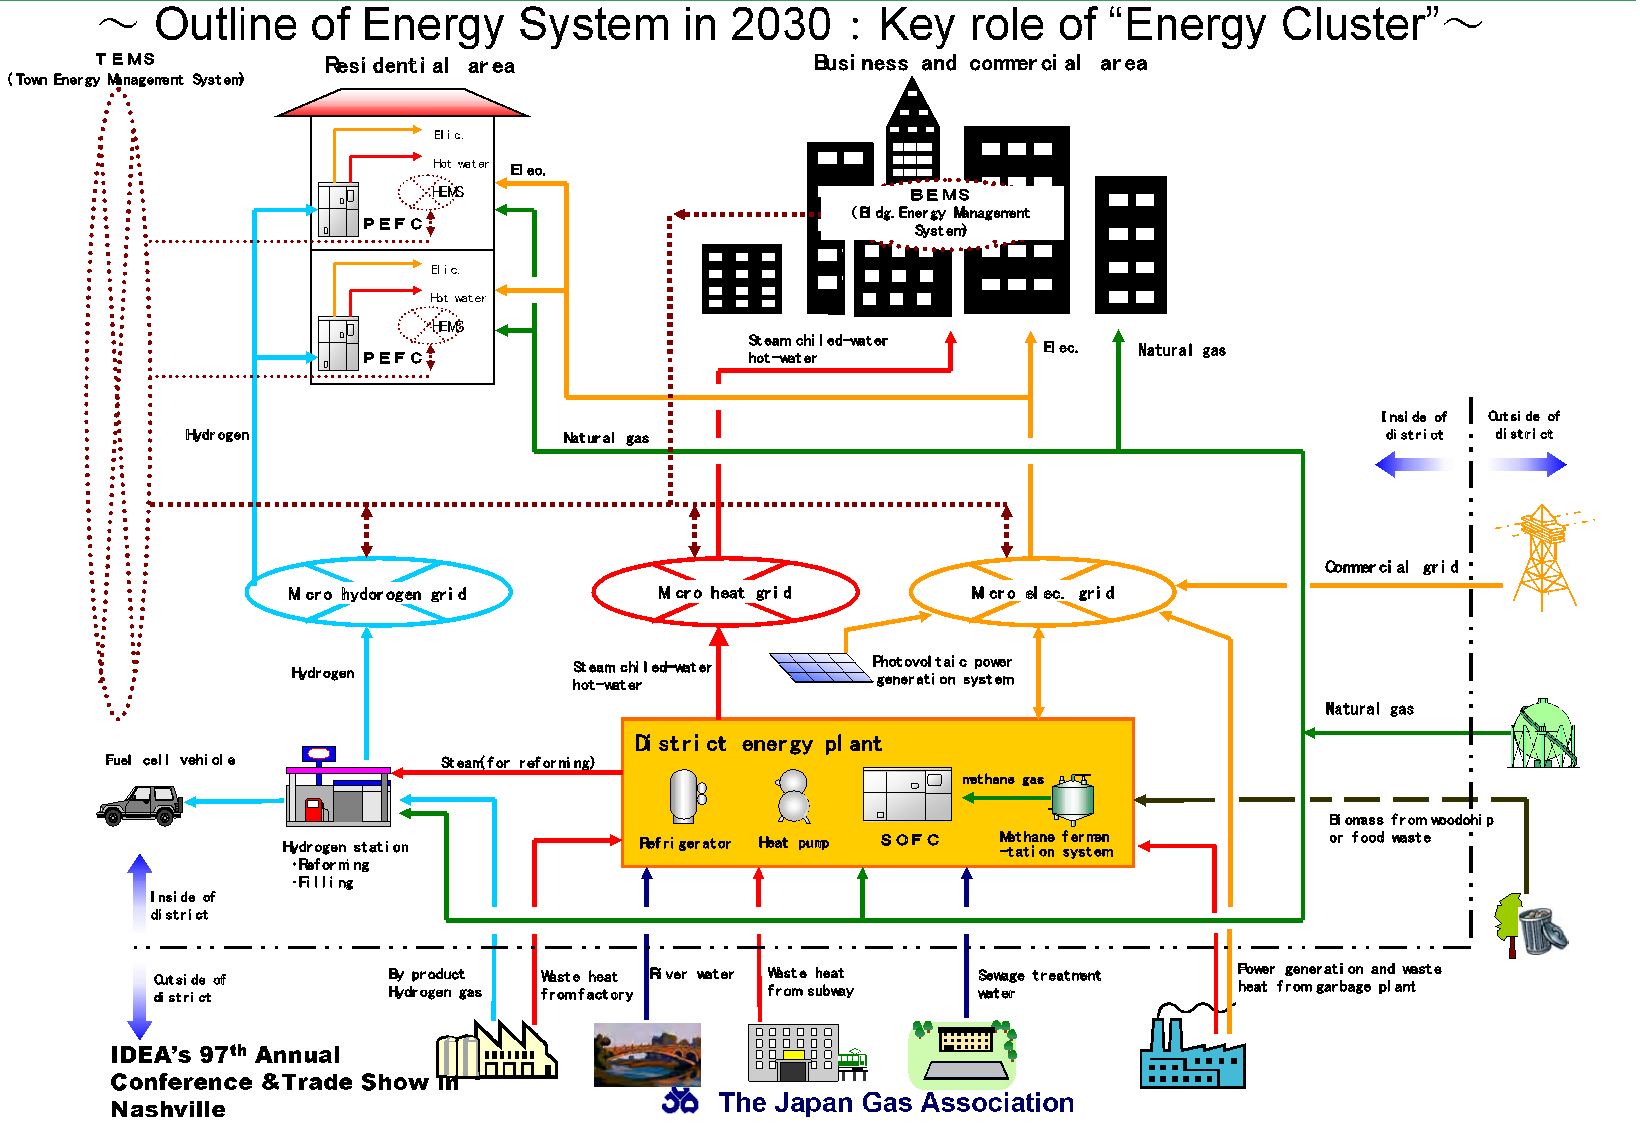 일본의 Japan Gas Association에서 제안한 지능형 복합에너지 그리드 개념도[5]